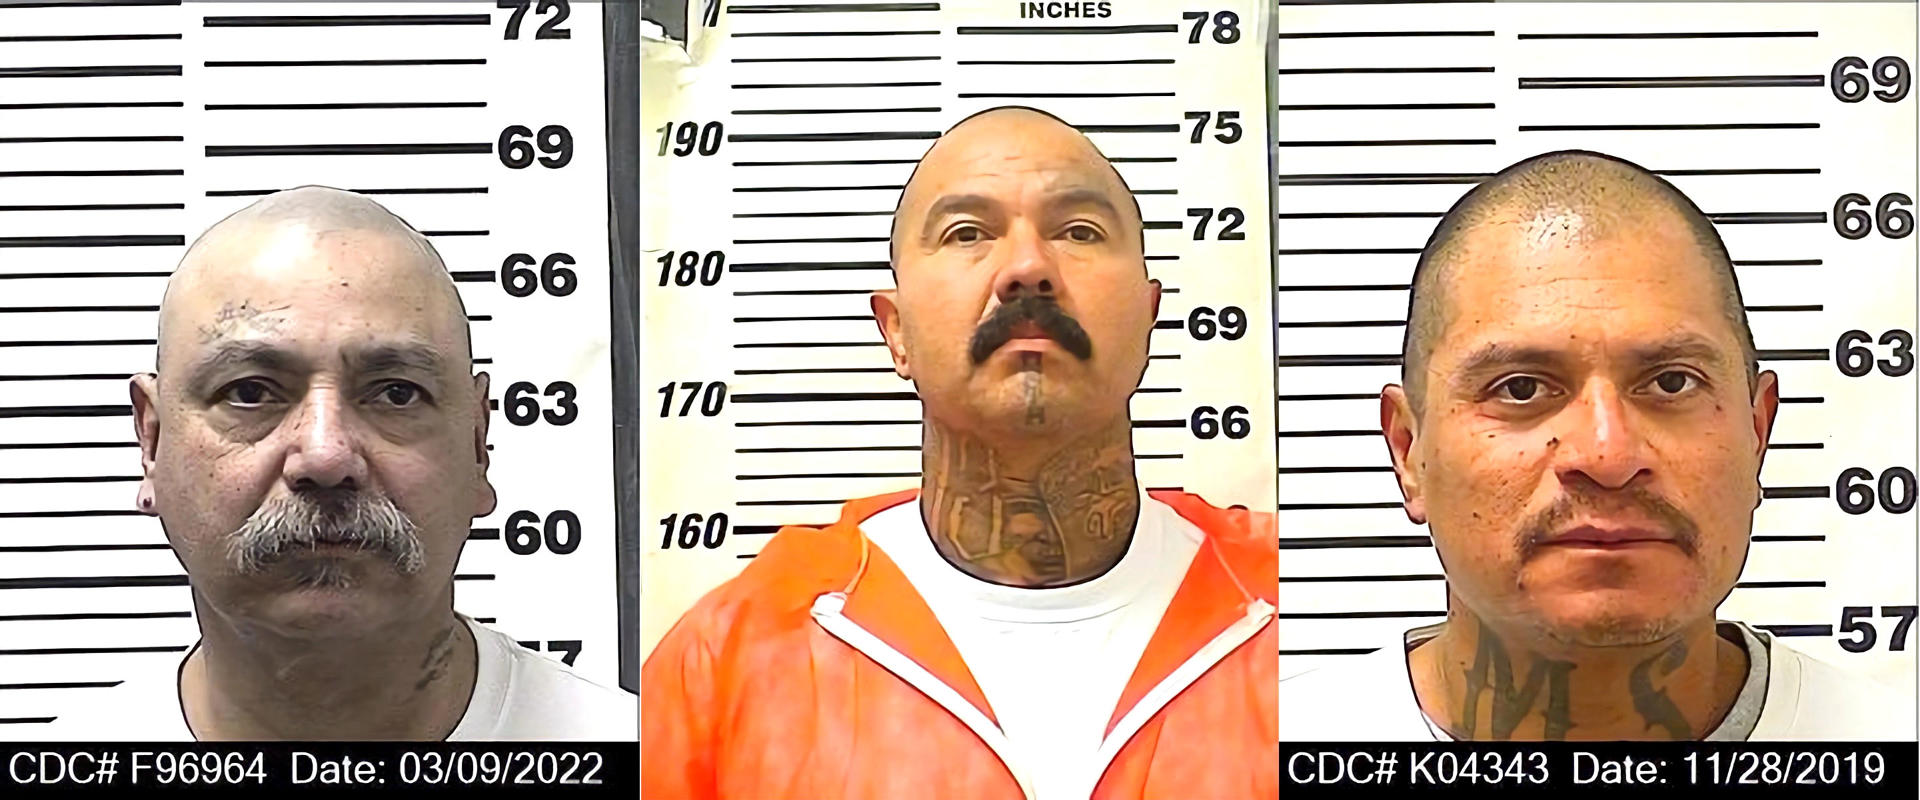 Muere apuñalado en una cárcel de California un jefe pandillero y de drogas mexicano